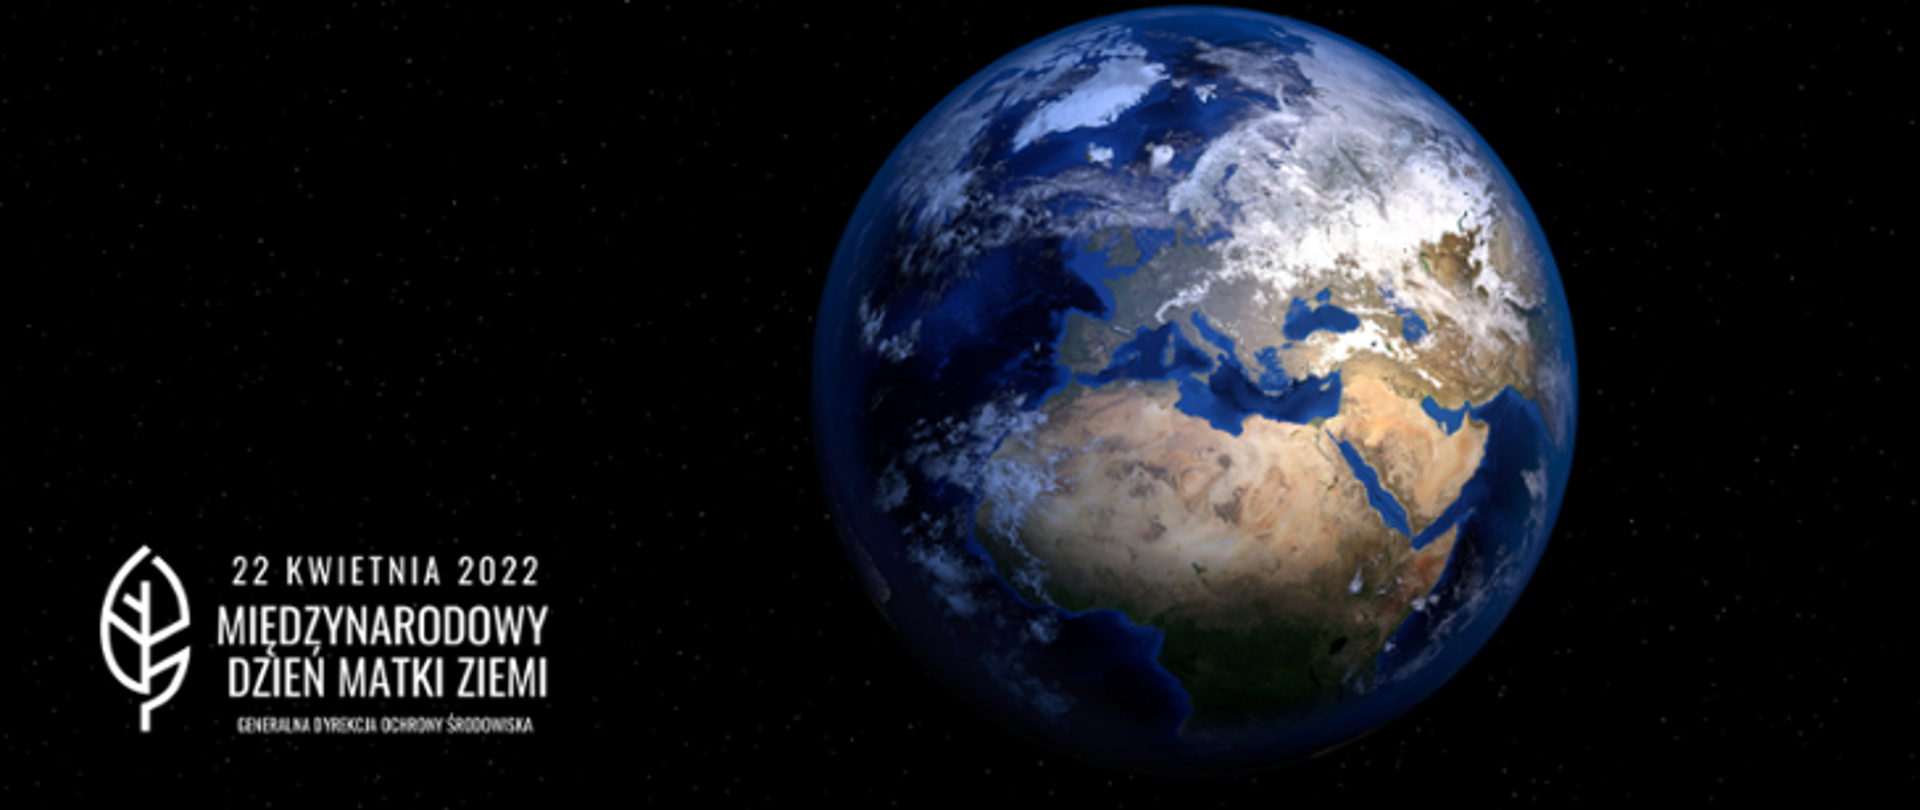 zdjęcie satelitarne Ziemi